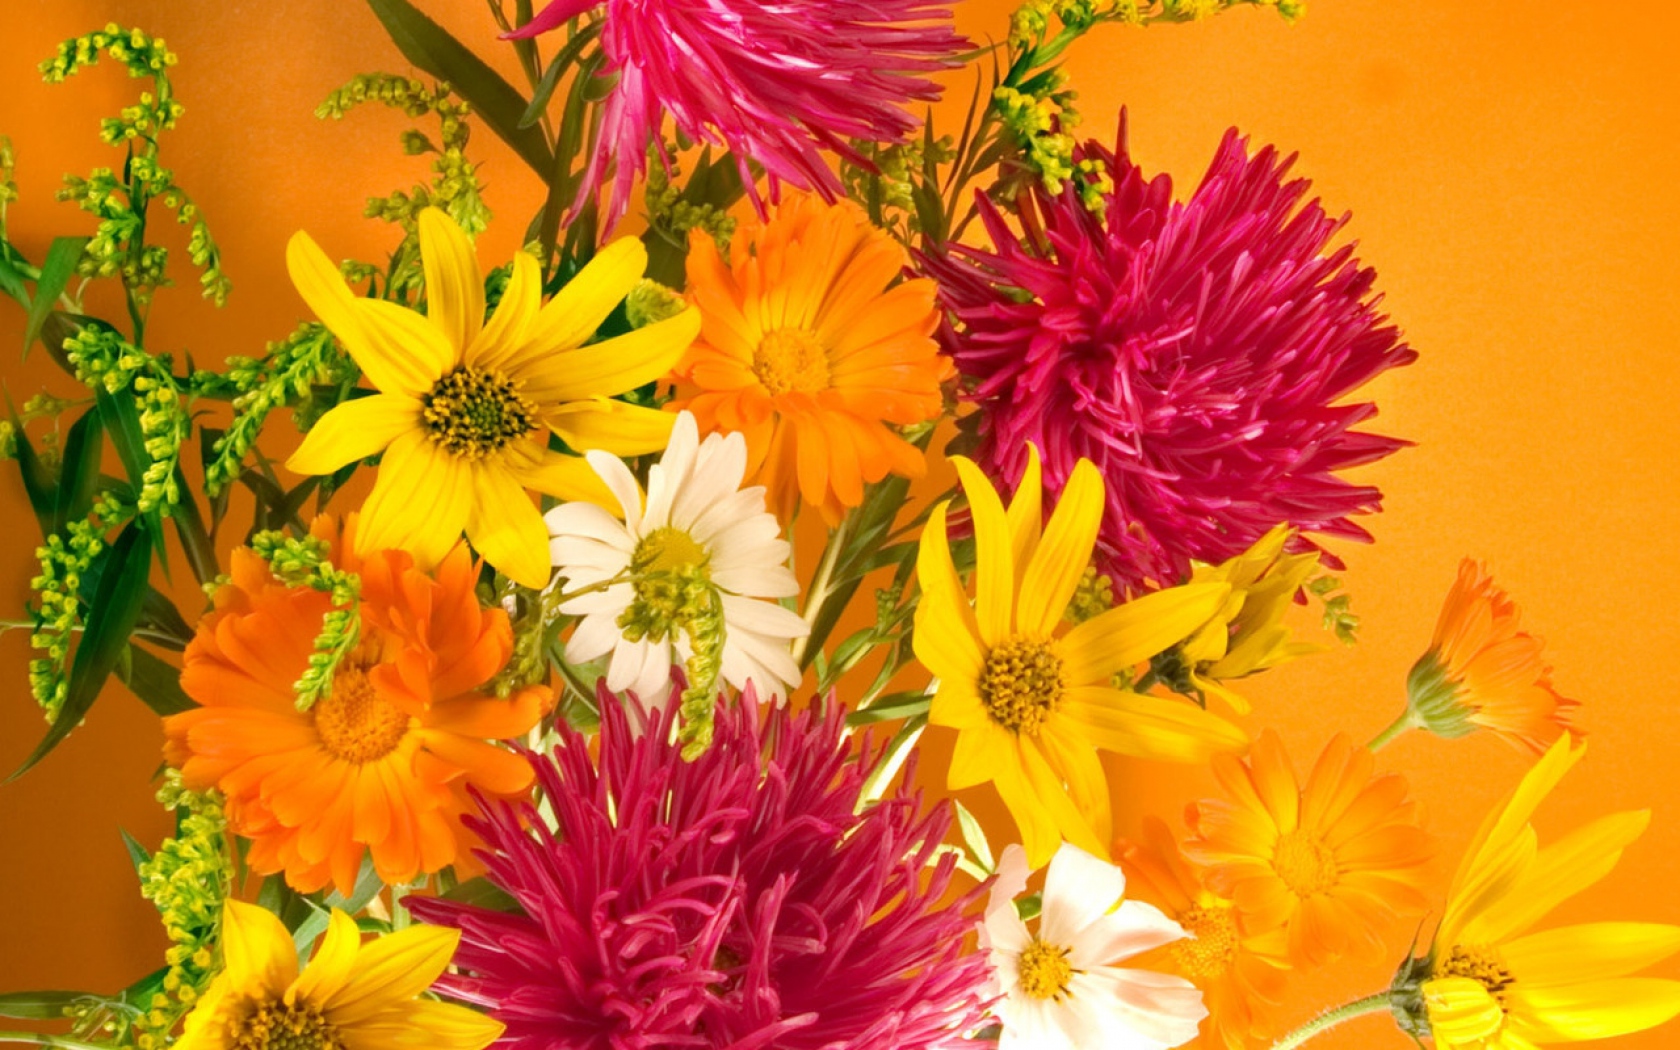 Handy-Wallpaper Blumen, Blume, Farben, Bunt, Gelbe Blume, Weiße Blume, Erde/natur, Pinke Blume kostenlos herunterladen.